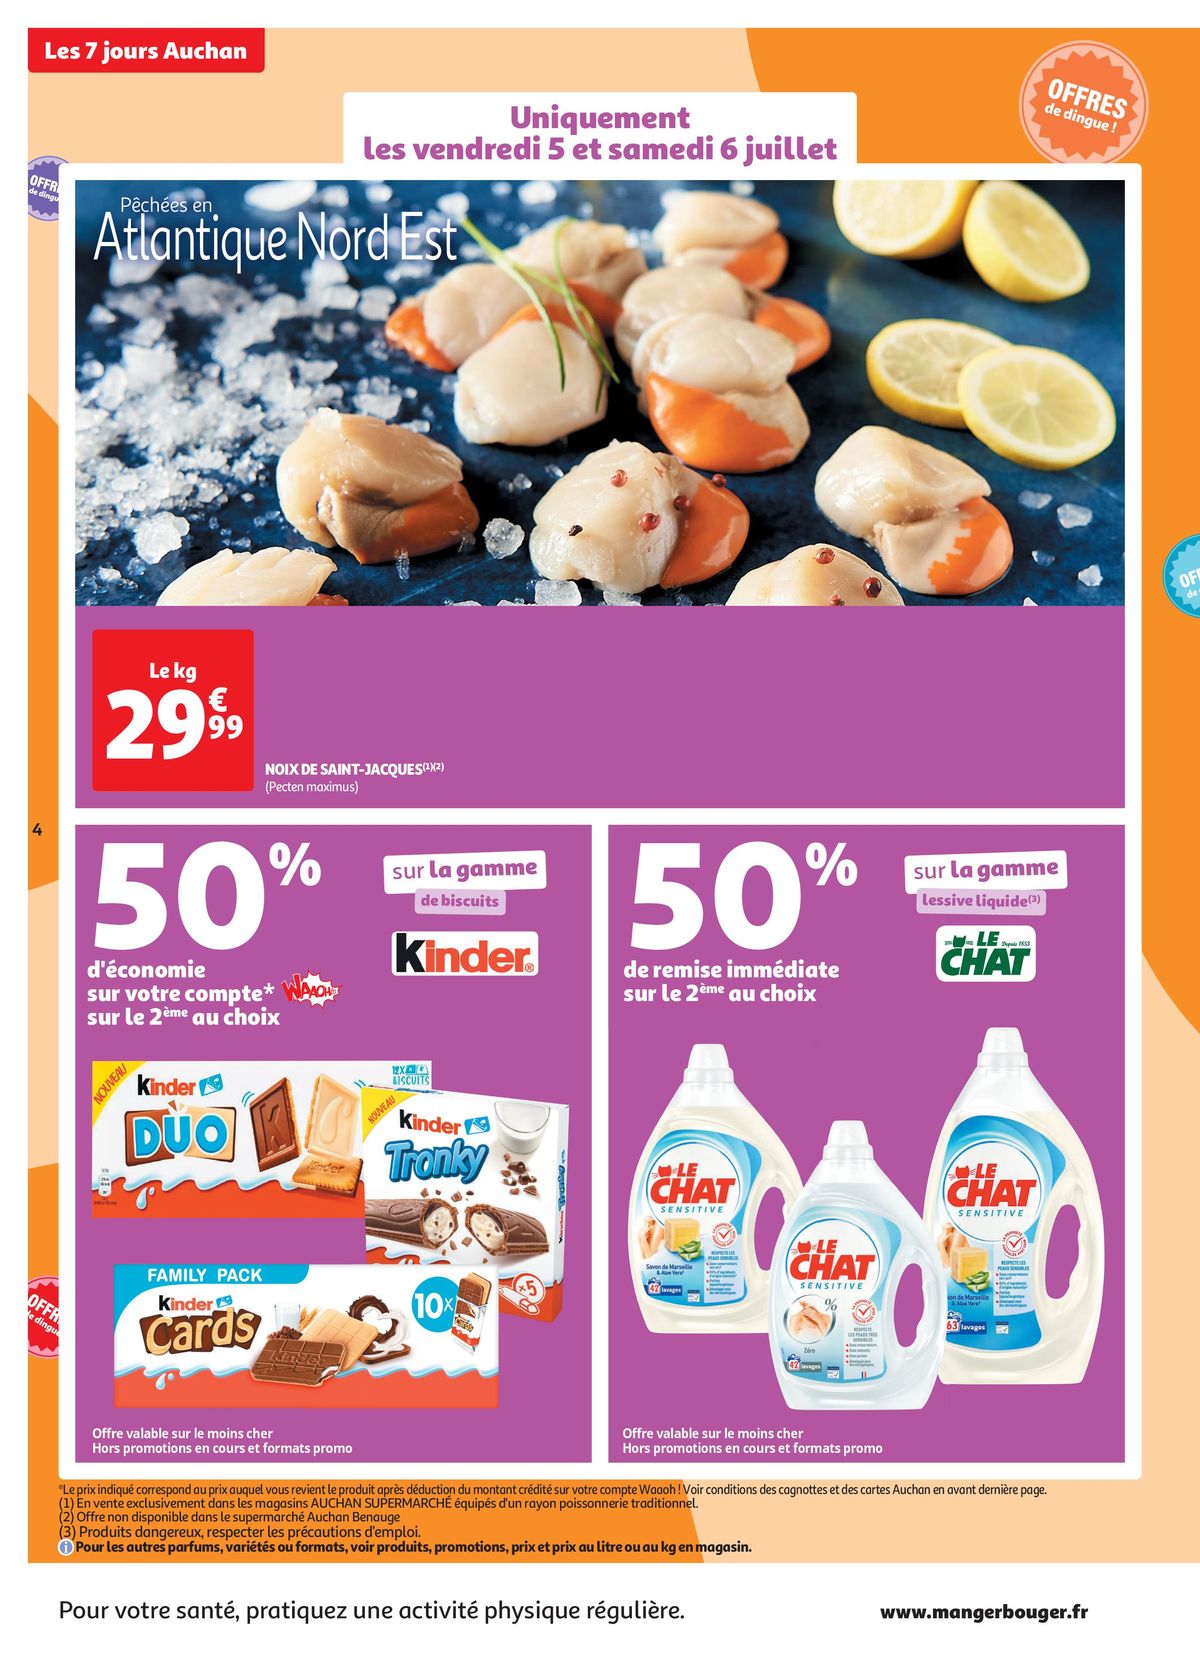 Catalogue C'est les 7 jours Auchan dans votre super !, page 00004